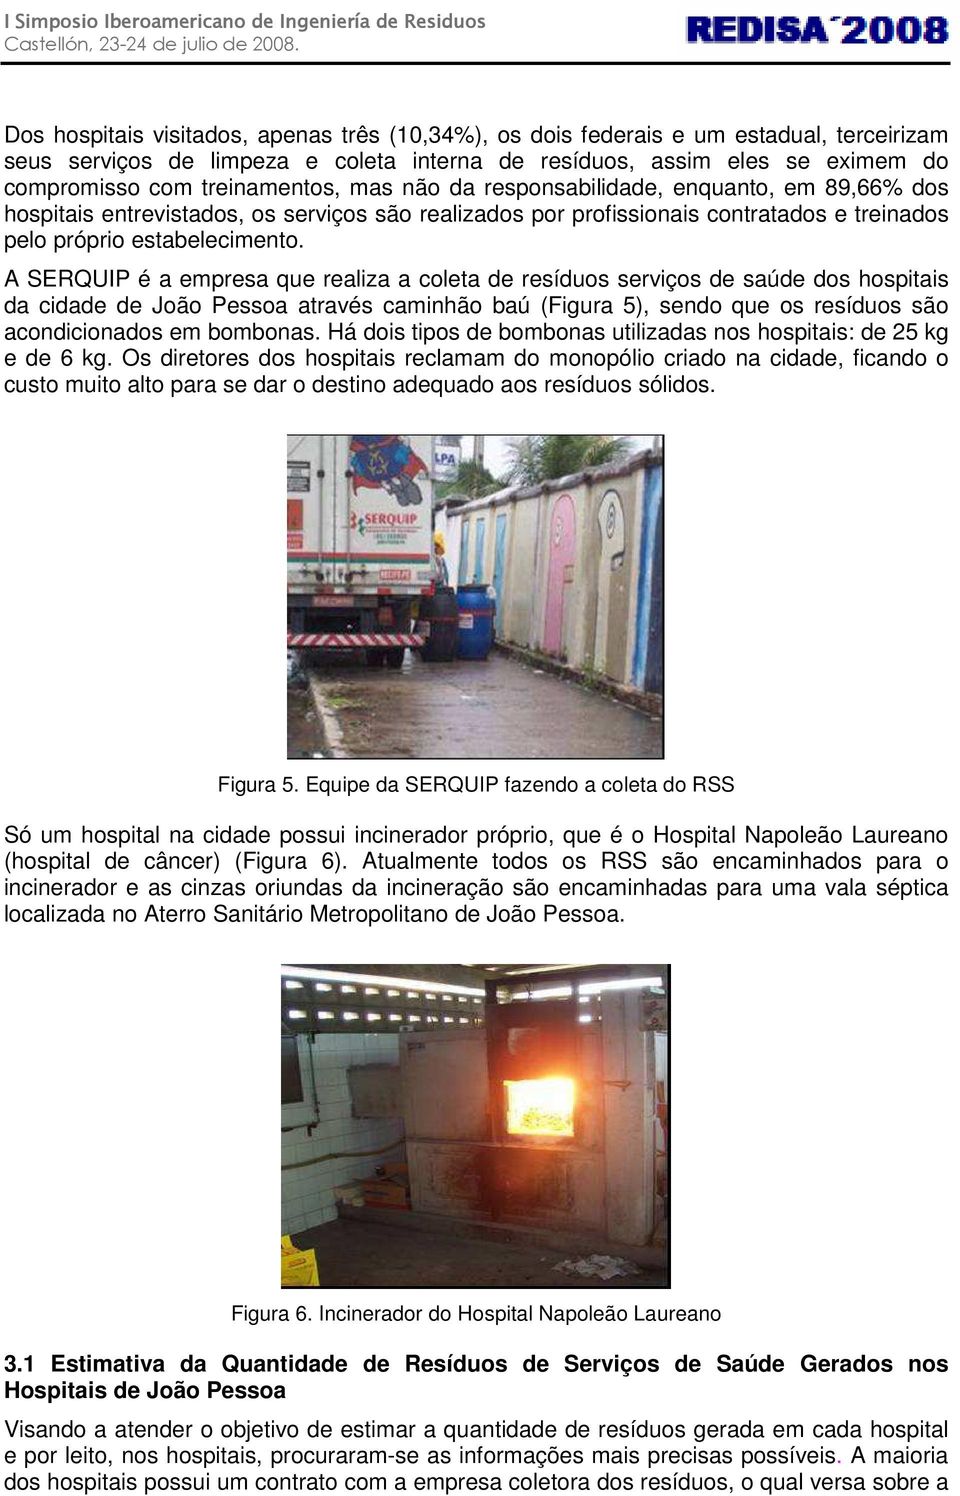 A SERQUIP é a empresa que realiza a coleta de resíduos serviços de saúde dos hospitais da cidade de João Pessoa através caminhão baú (Figura 5), sendo que os resíduos são acondicionados em bombonas.